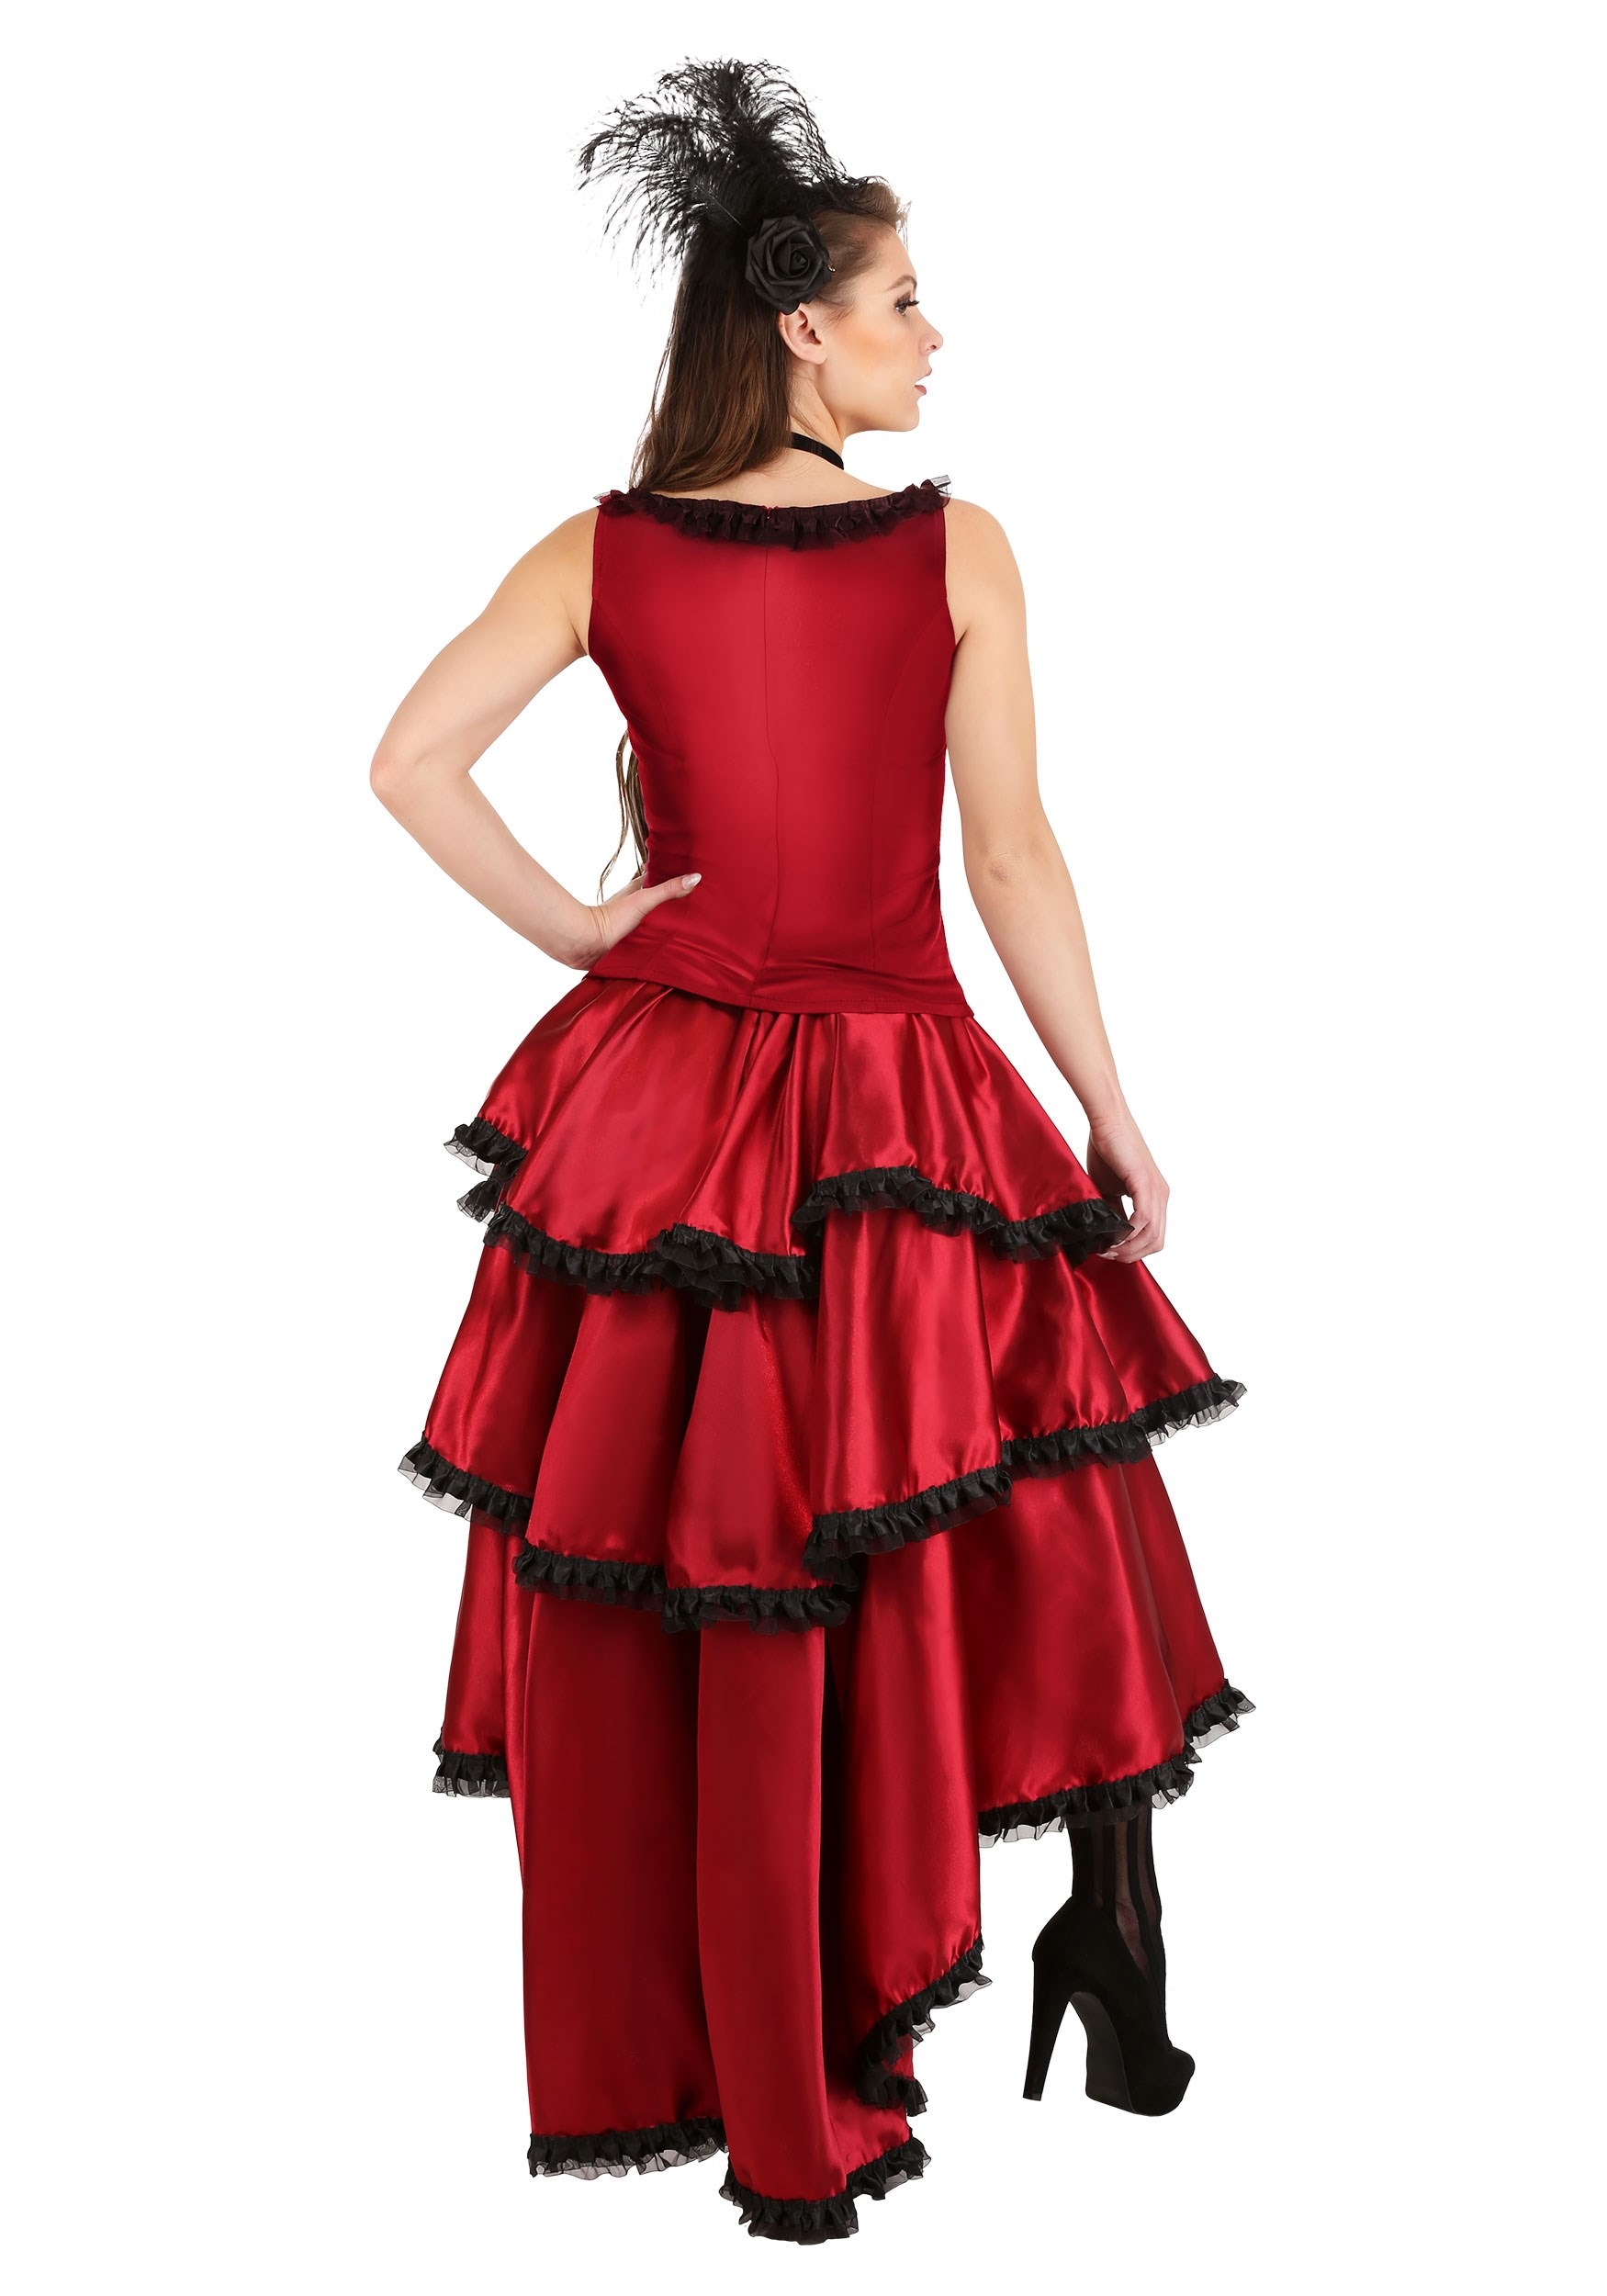 Women's Sultry Saloon Girl Fancy Dress Costume